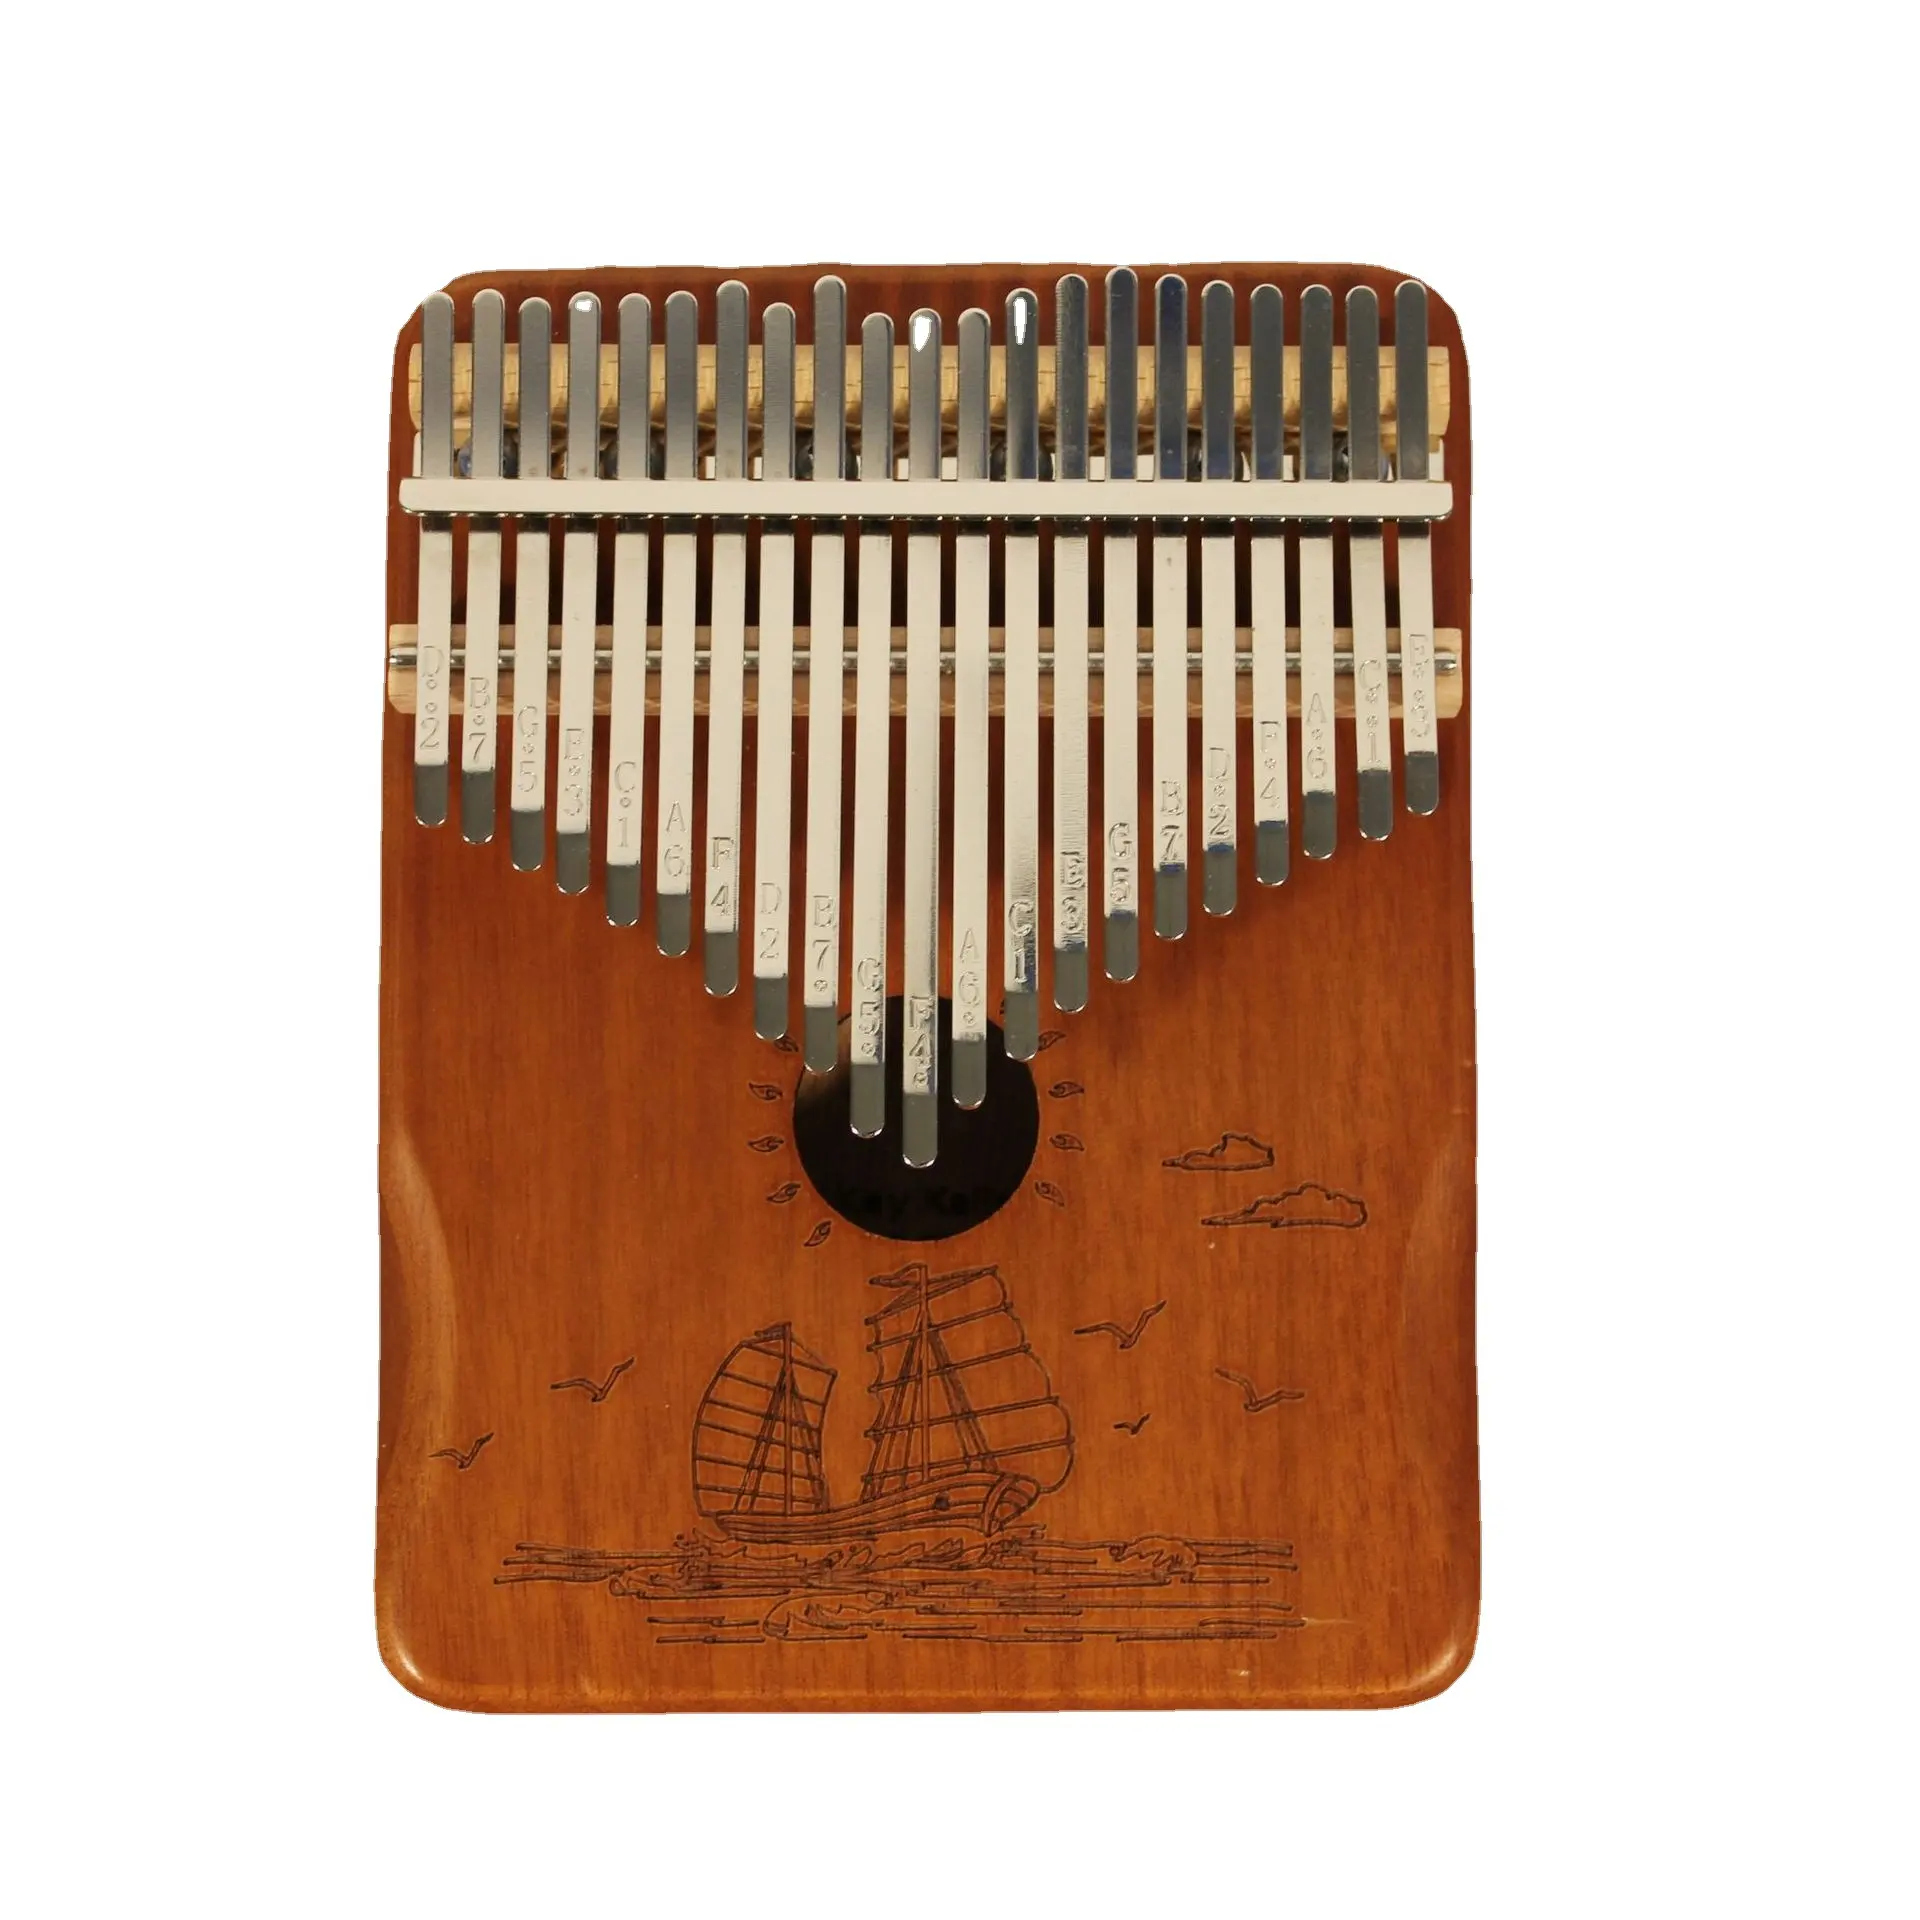 Kalimba portátil de 21 teclas para niños, adultos y principiantes, instrumentos musicales de pulgar, madera sólida